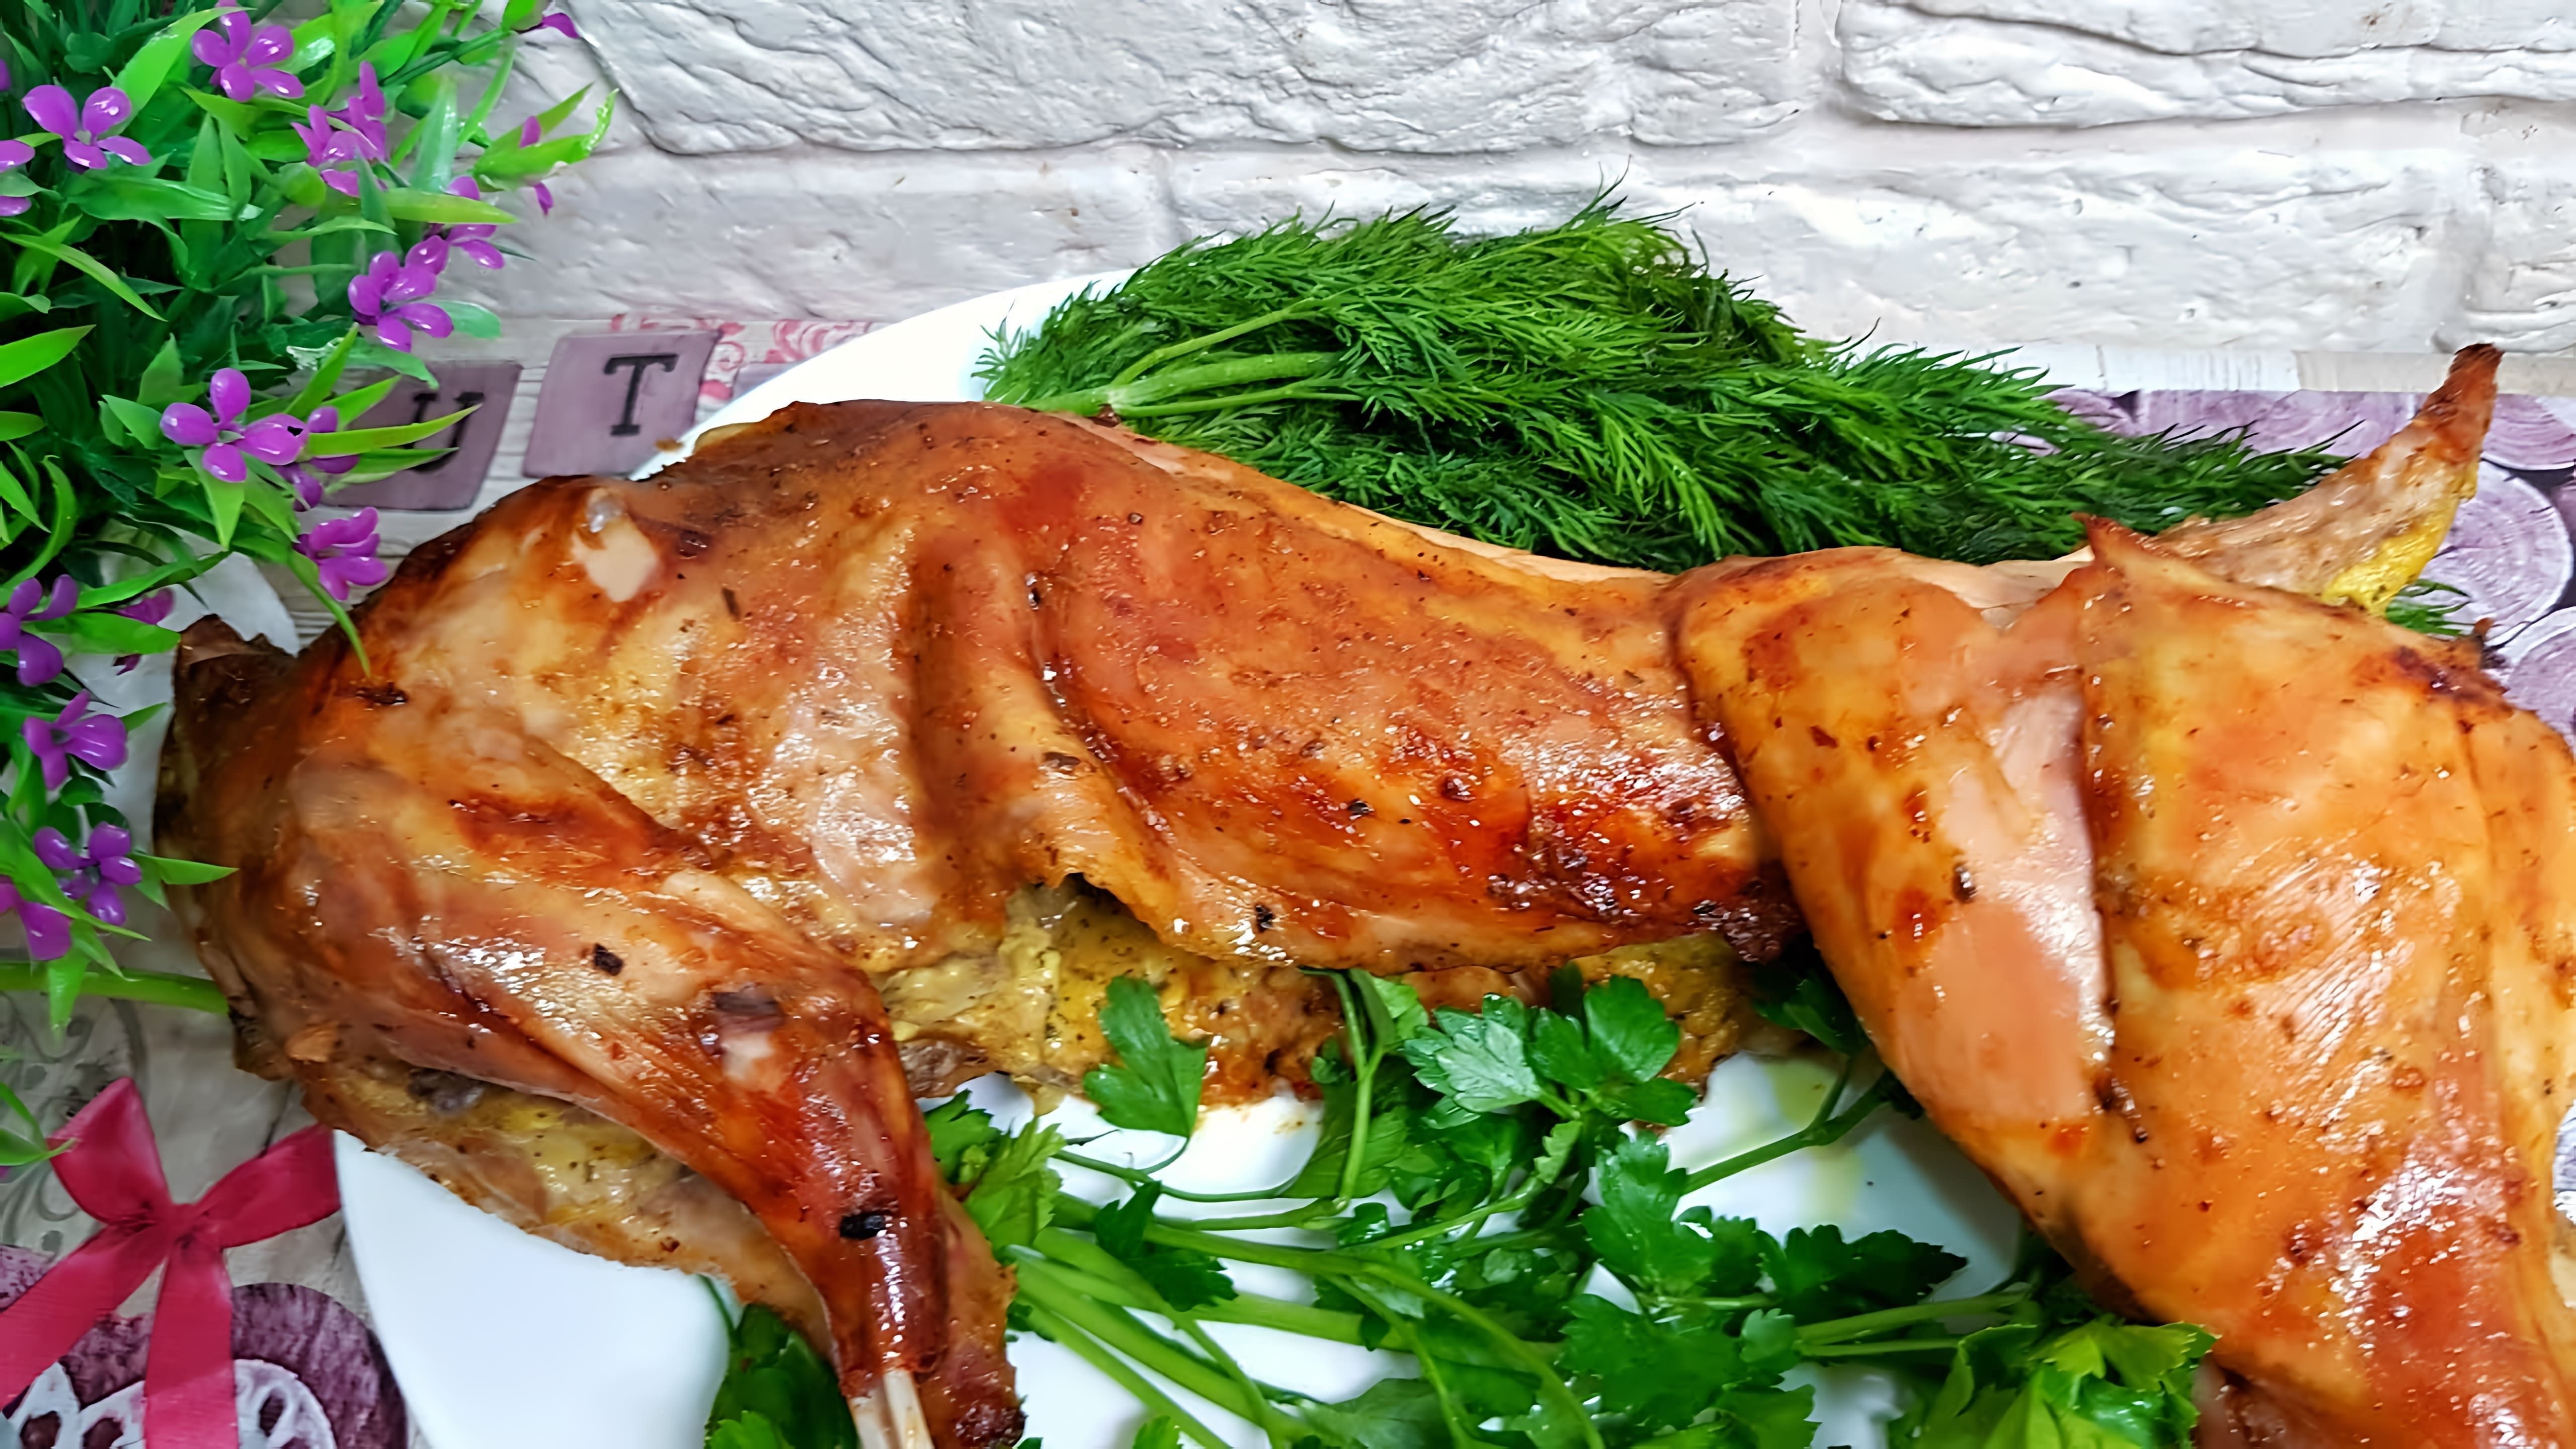 Видео рецепт жареного кролика, который идеально подойдет для праздничного стола или любого приема пищи